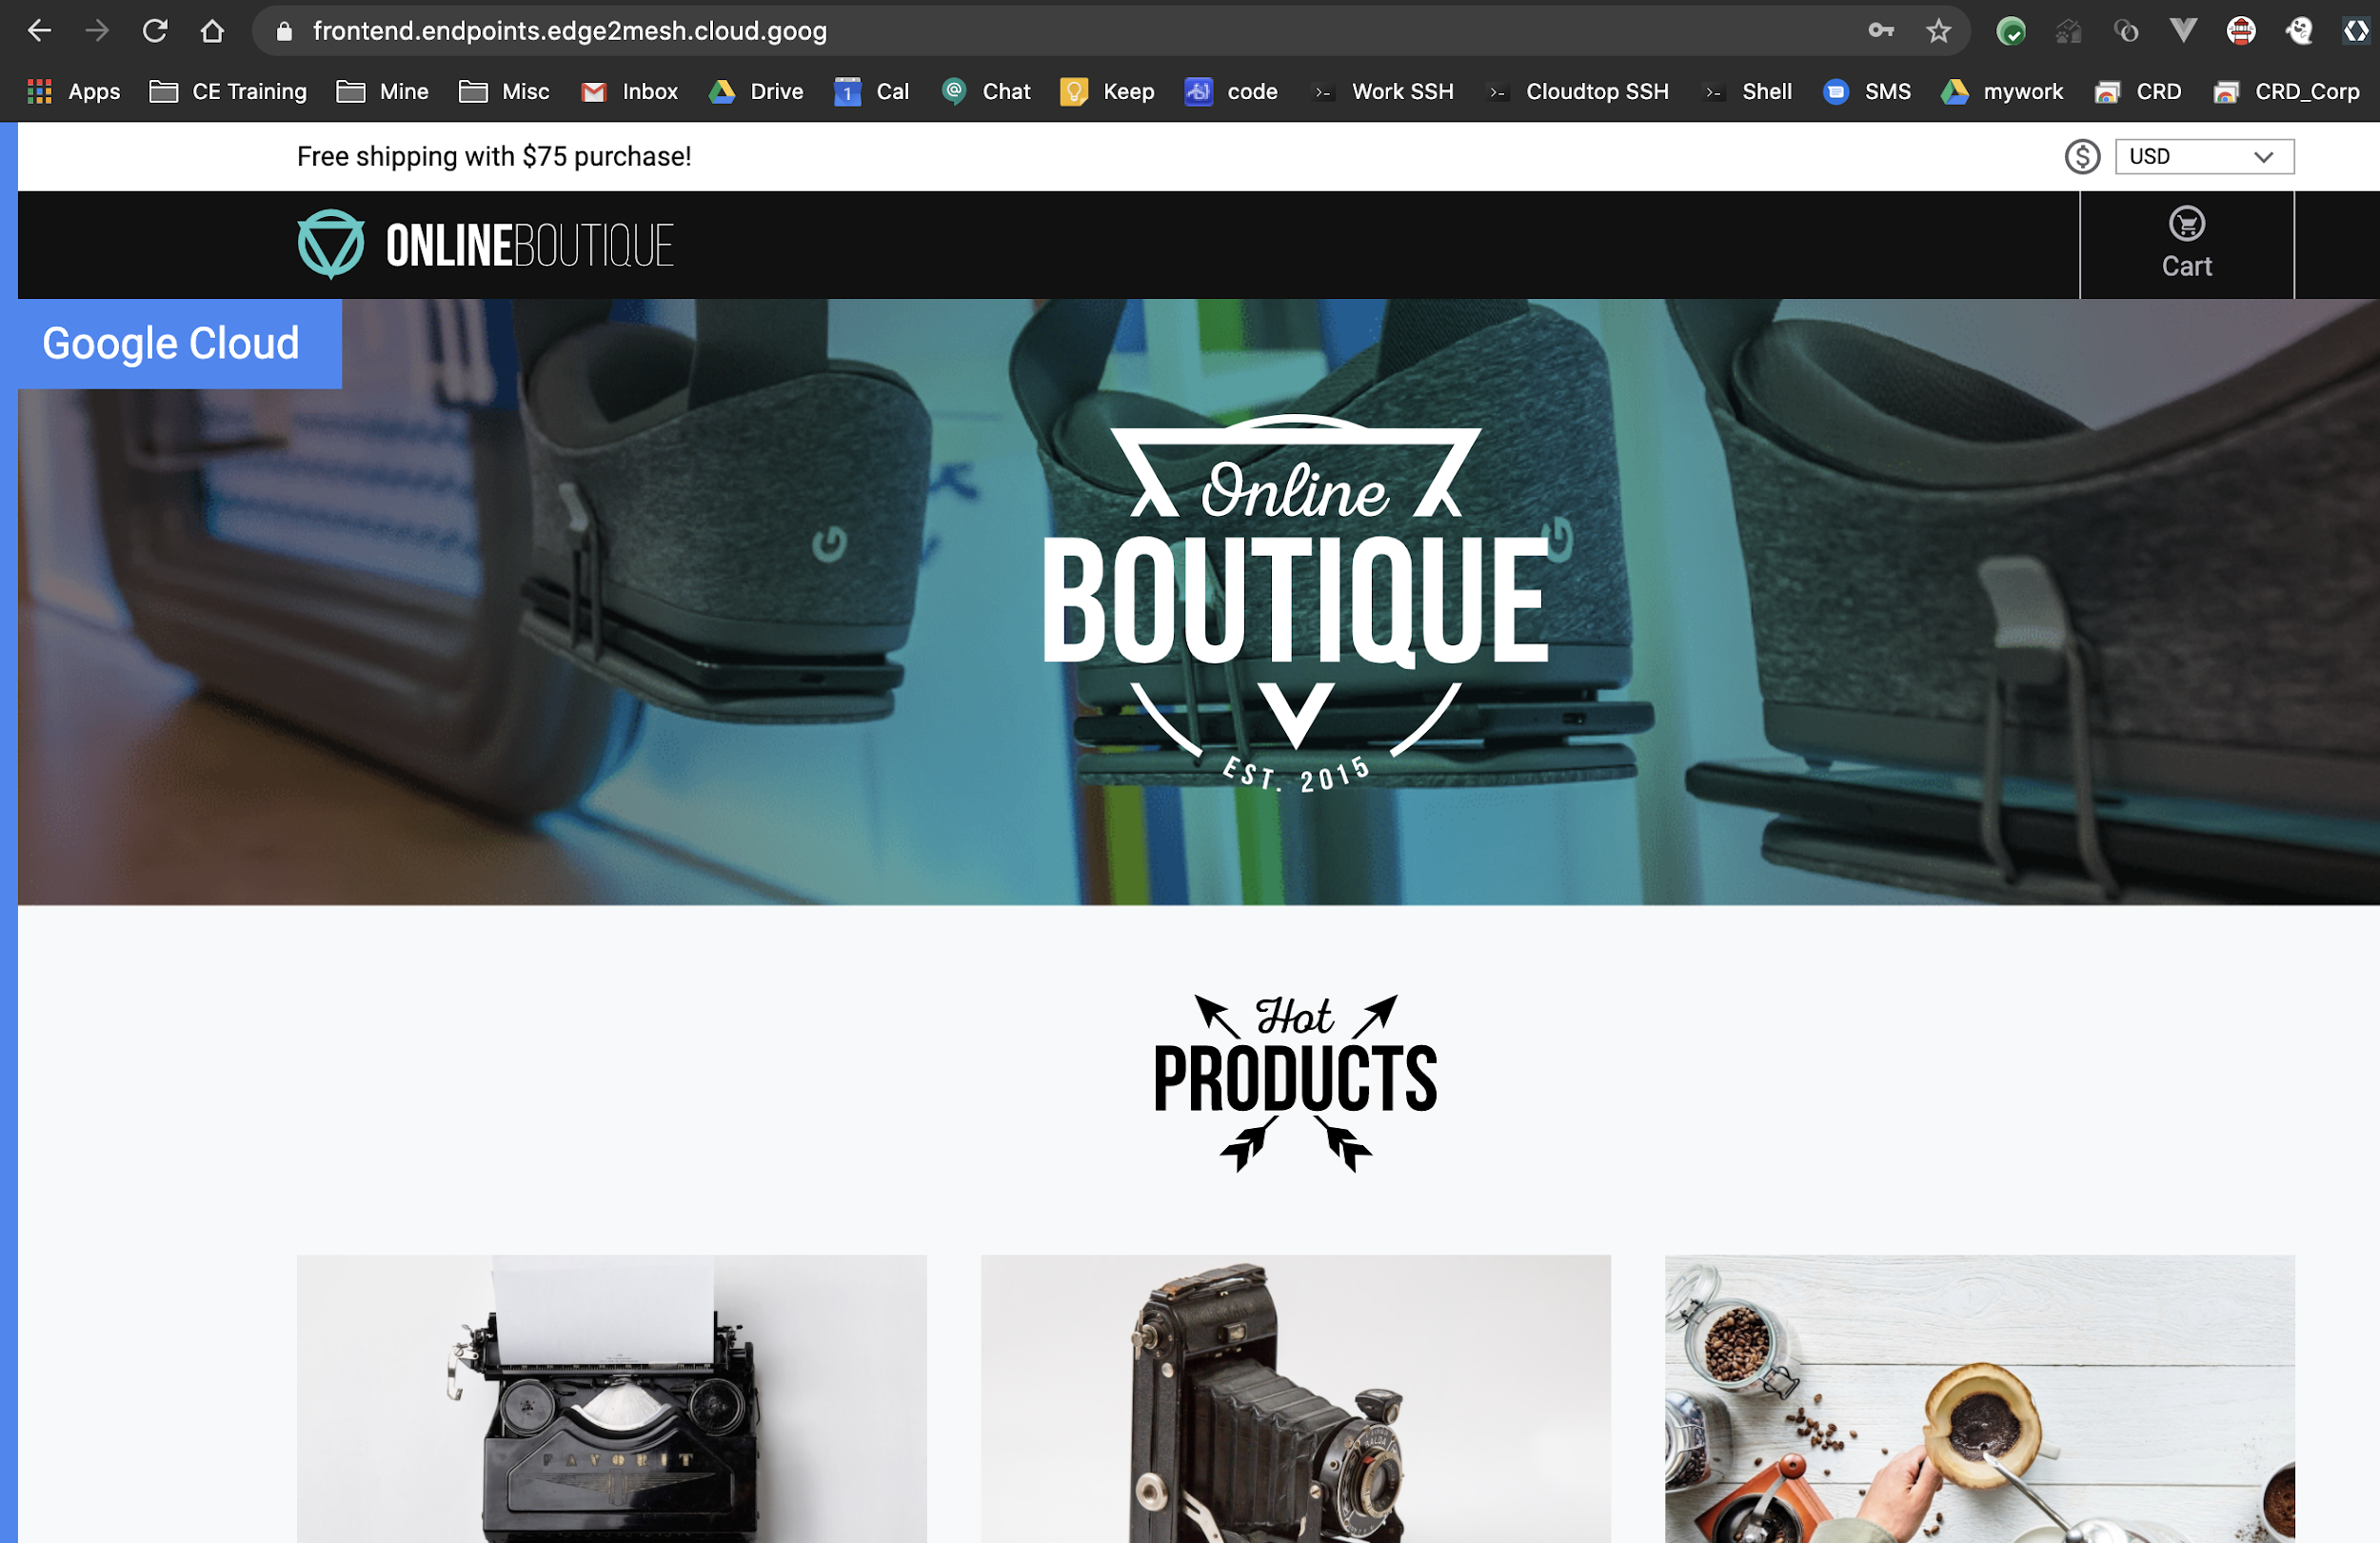 Produkte auf der Startseite der Online-Boutique.